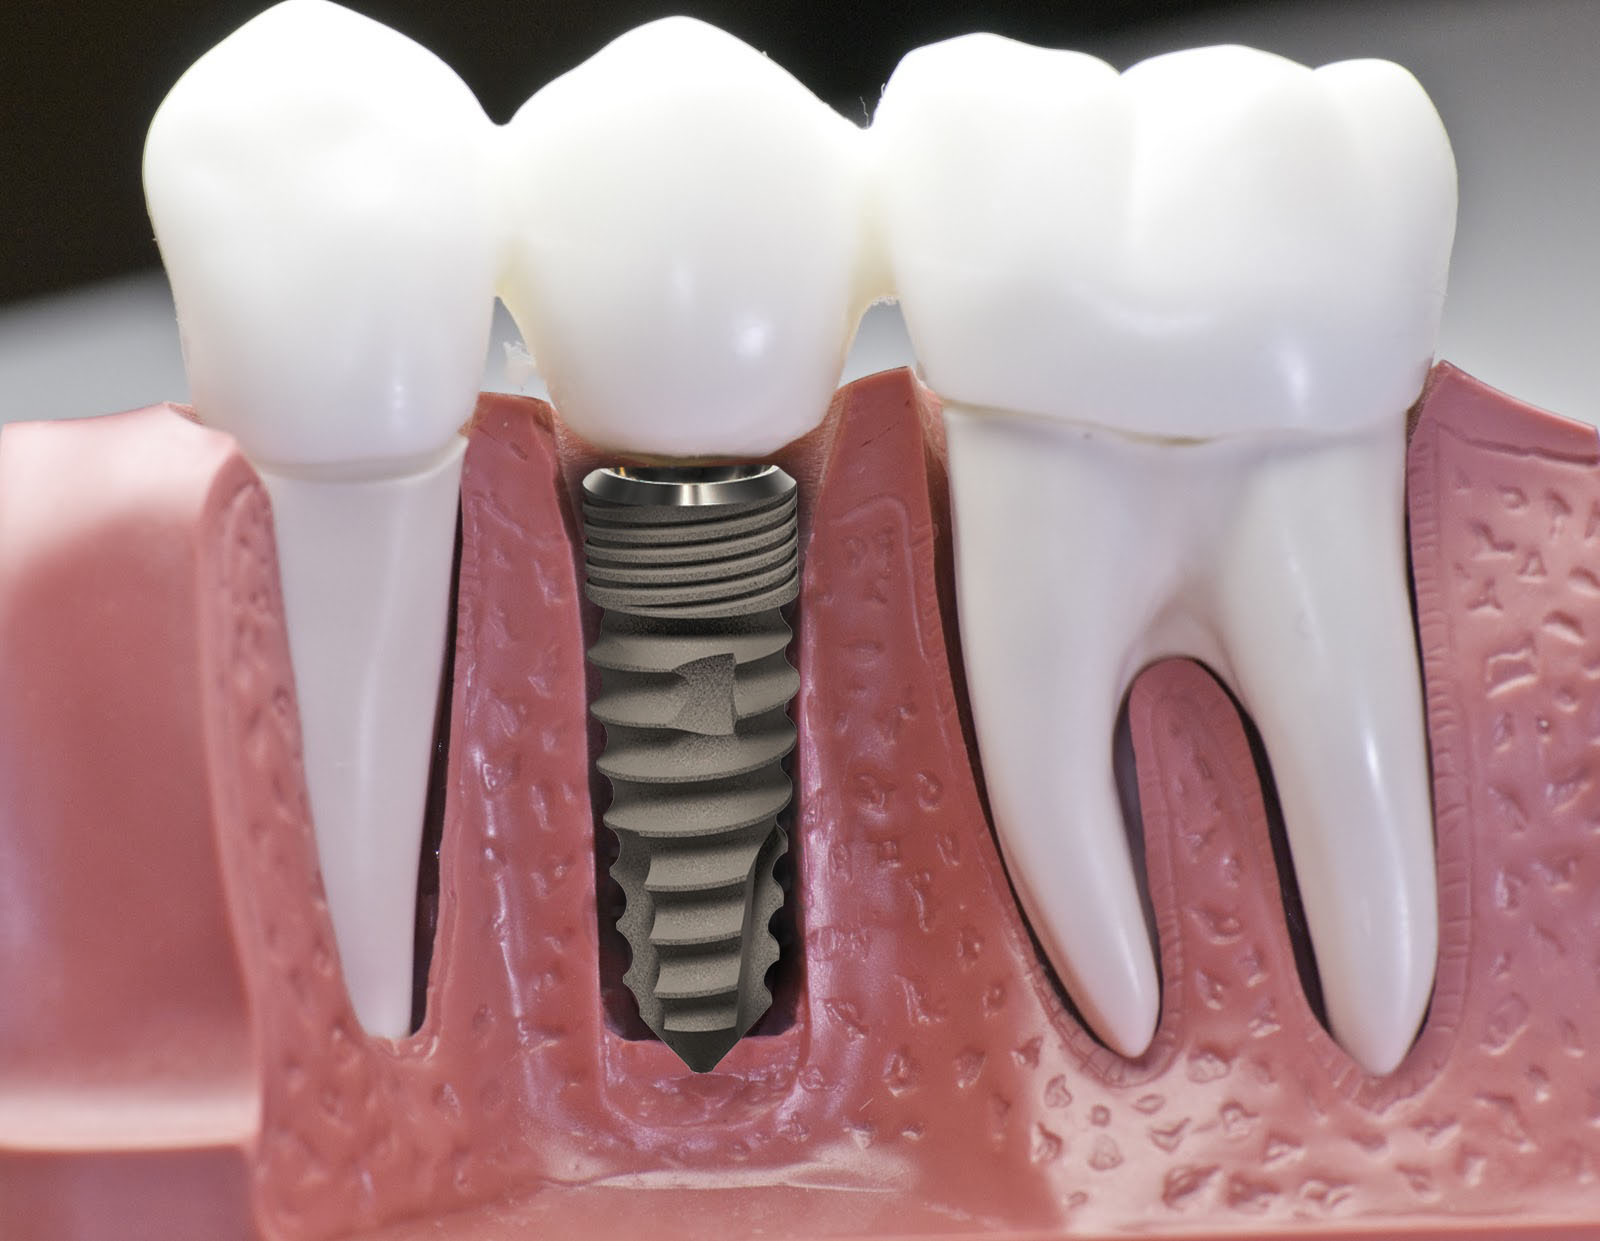 Răng implant bị lung lay: Nguyên nhân và cách khắc phục hiệu quả